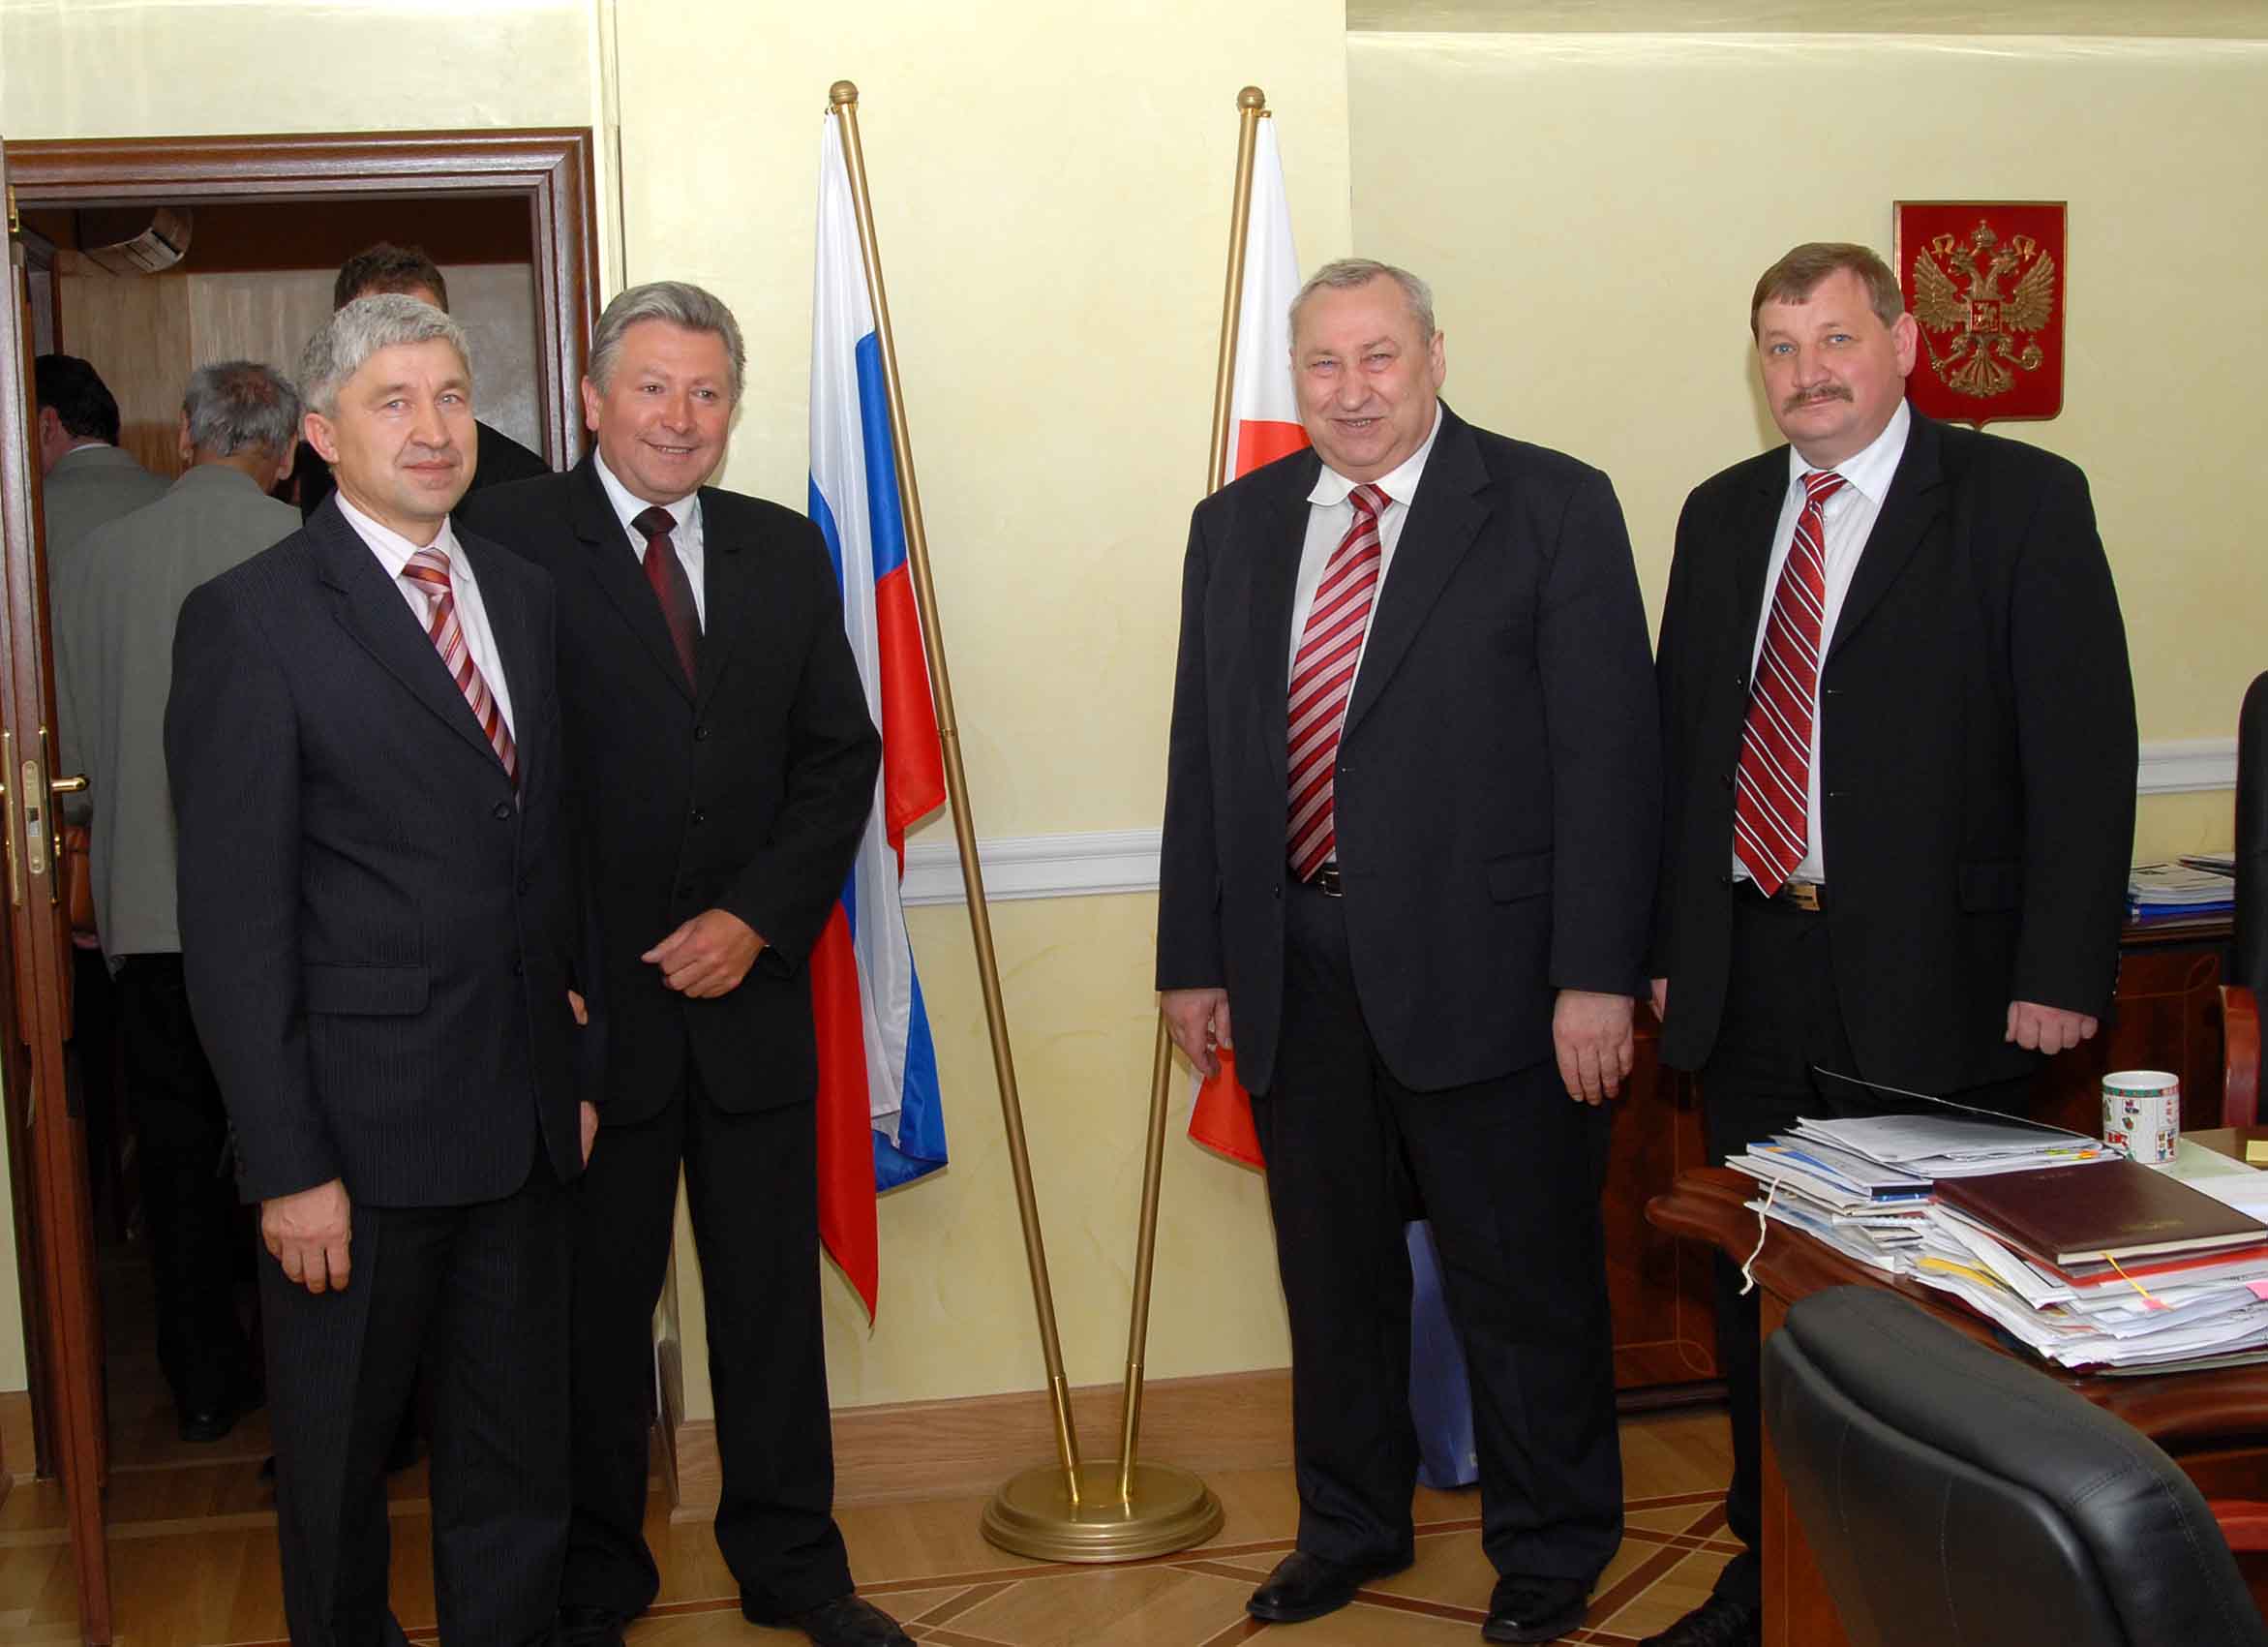 Wizyta u przedstawiciela handlowego FR Nikoaja Zachmatowa. Od lewej: Krzysztof Laska, Mieczysaw Szymalski, gospodarz, Tomasz Koczara